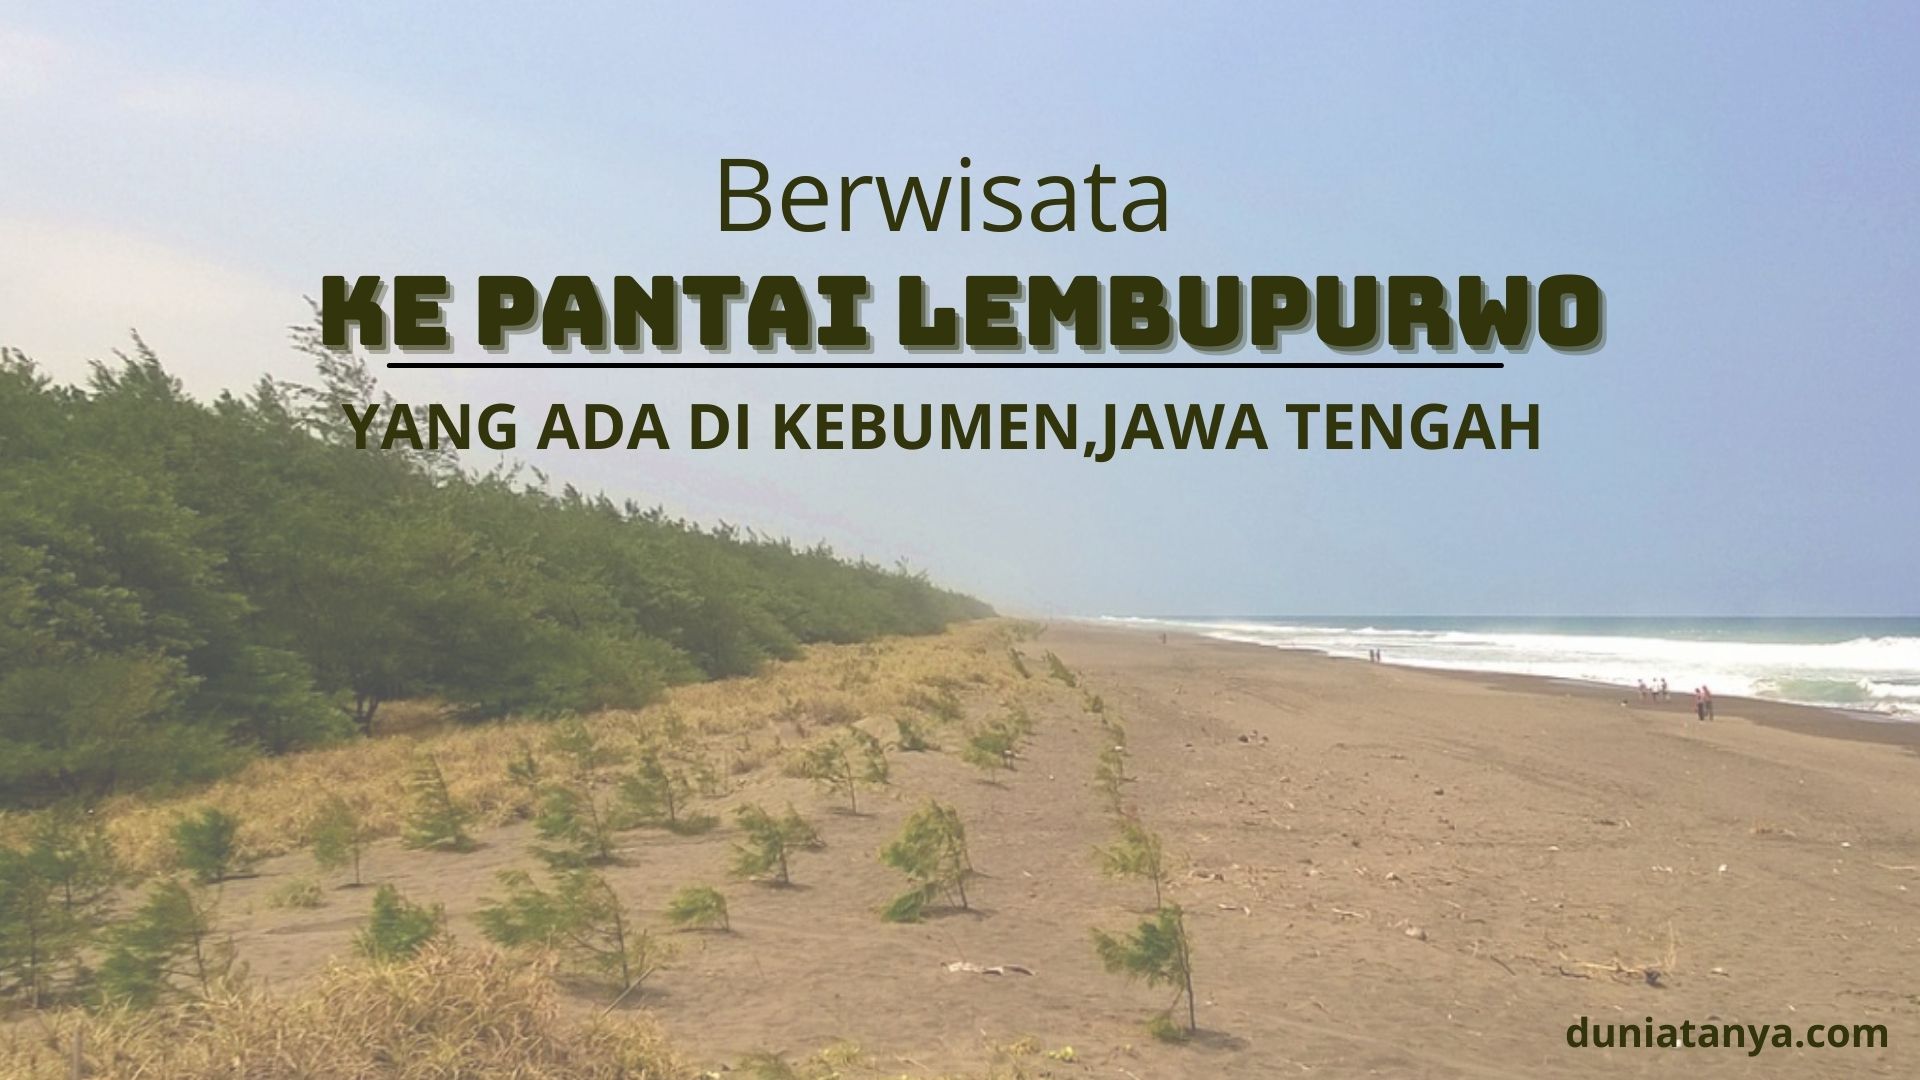 You are currently viewing Berwisata Ke Pantai Lembupurwo Yang Ada Di Kebumen,Jawa Tengah